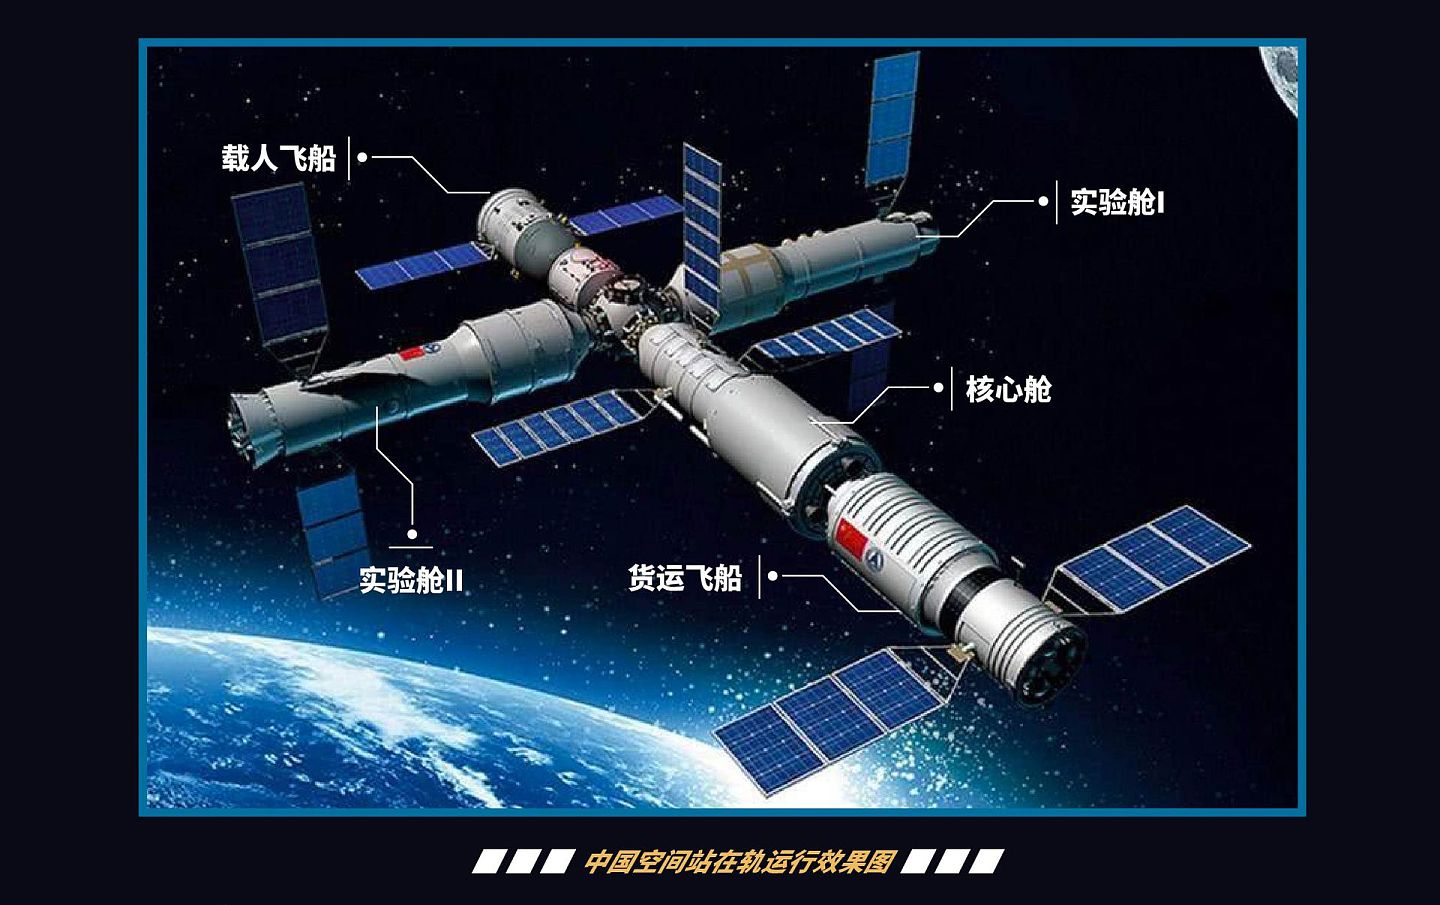 中国空间站建设已进入密集发射期，2021年迈入关键技术验证和建造阶段，计划在2022年投入运行。（多维新闻制作）